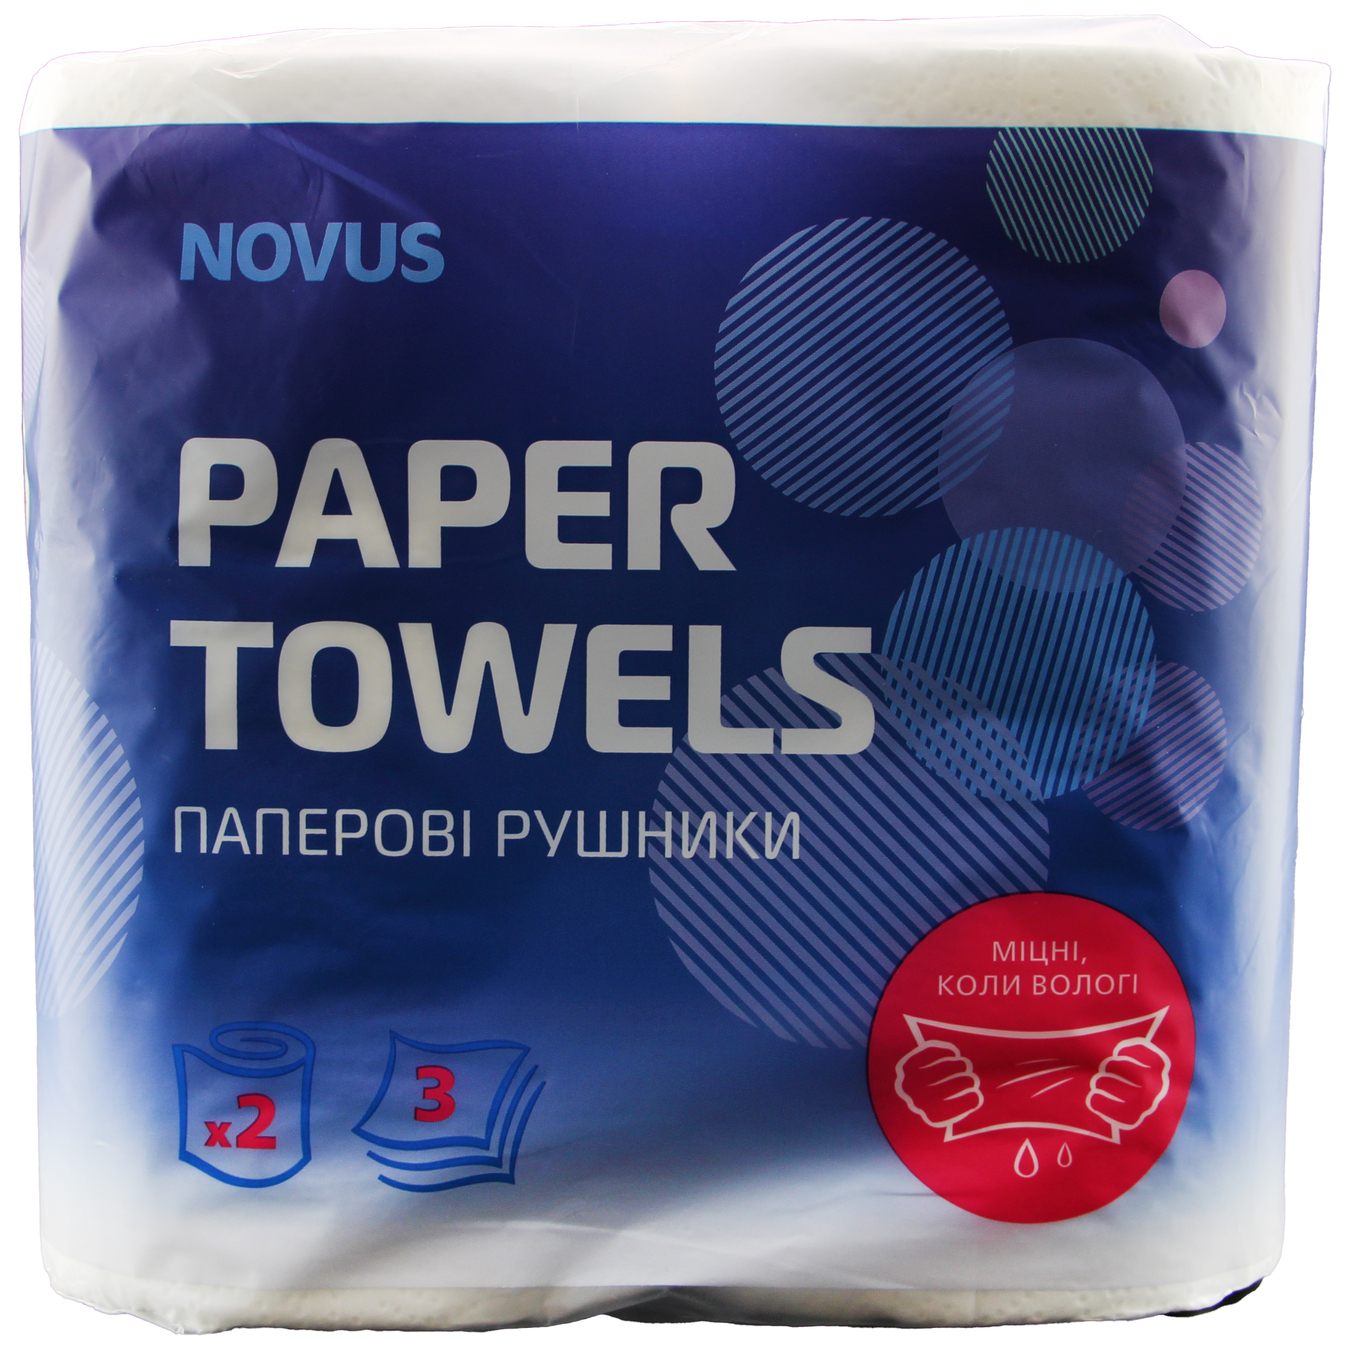 Novus 3-Ply Paper Towels 2 Rolls